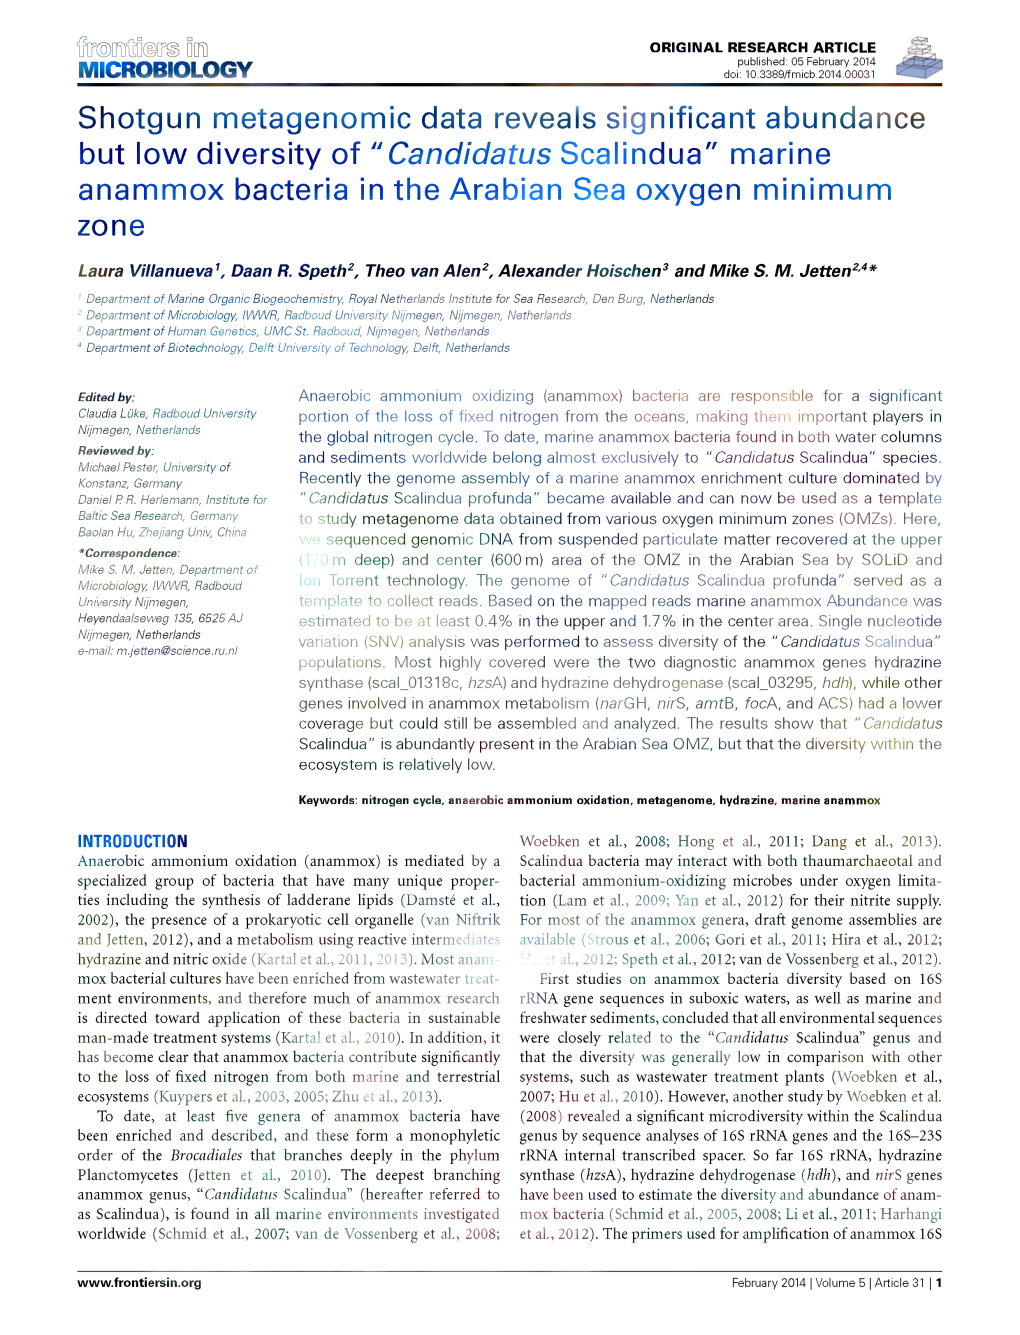 Candidatus Scalindua" Marine Anammox Bacteria in the Arabian Sea Oxygen Minimum Zone